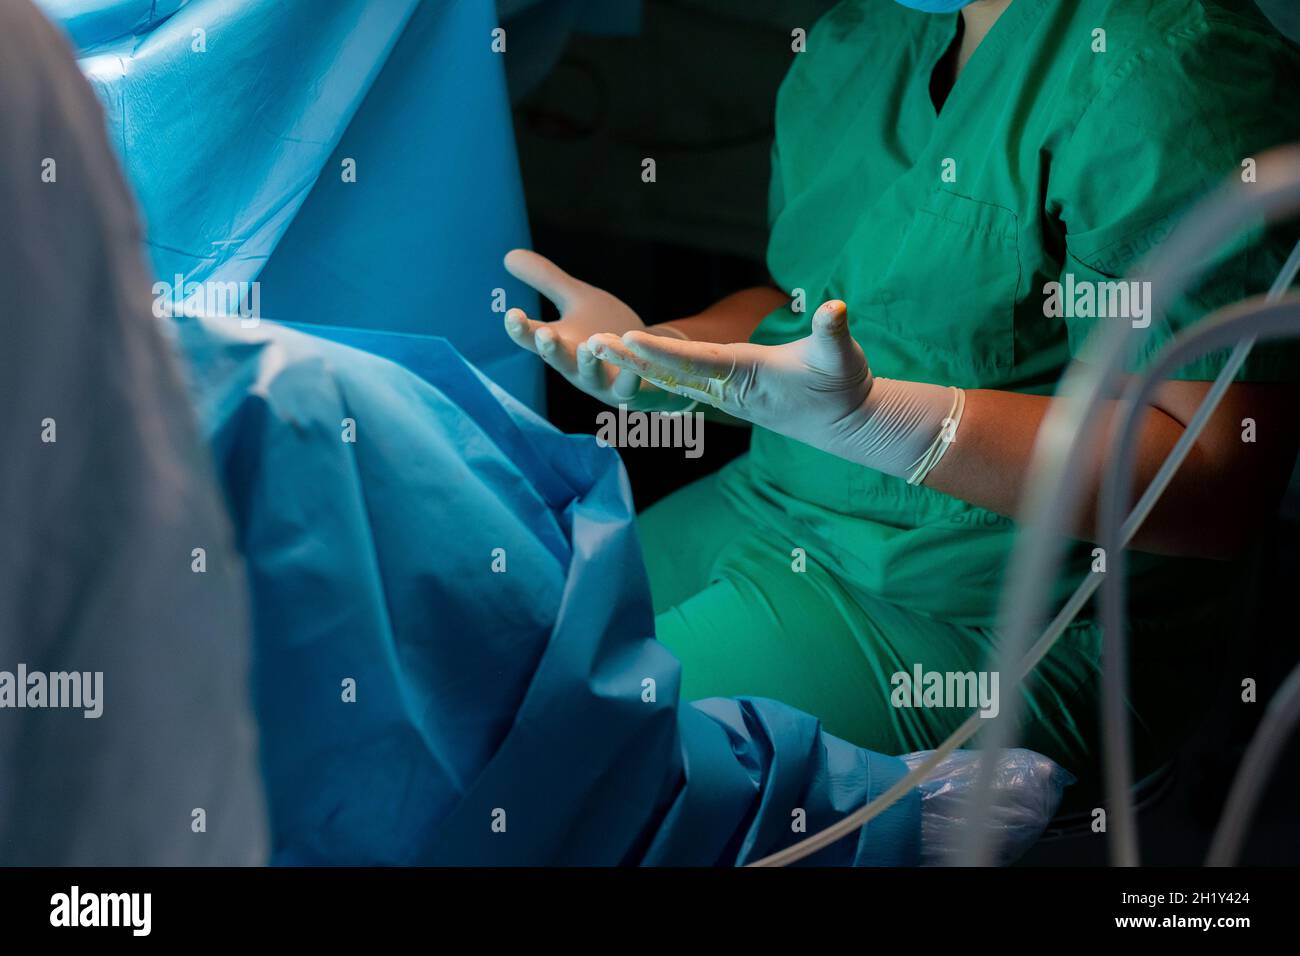 Mani del chirurgo in guanti sterili in lattice. Un chirurgo in uniforme verde tira in avanti le dita sparse in guanti chirurgici sterili. Le mani del chirurgo durante l'intervento chirurgico. Foto Stock